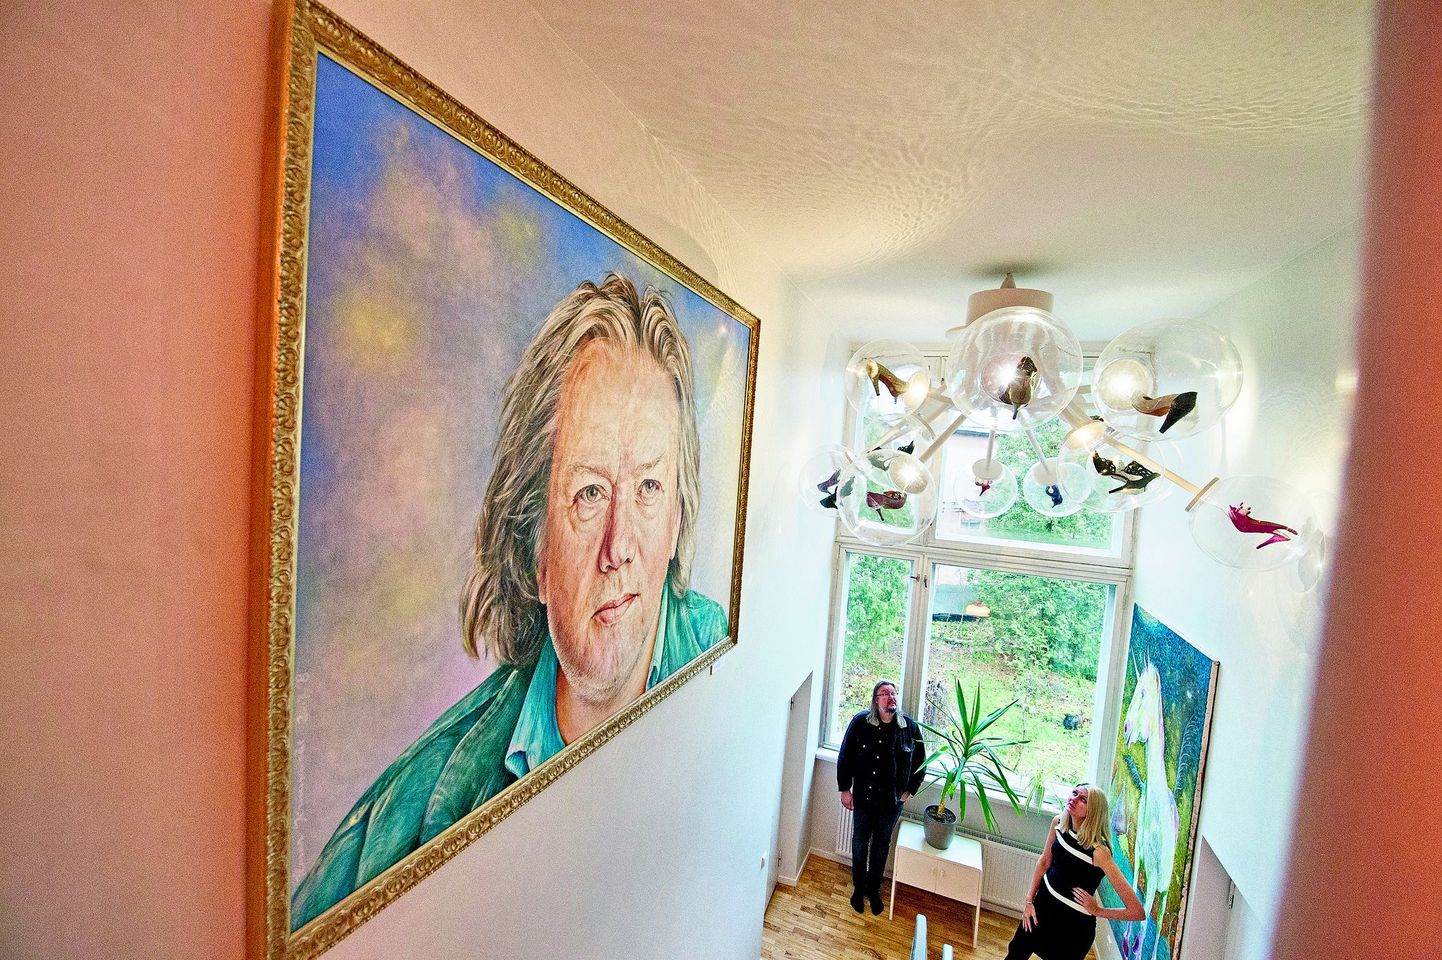 Esimese ja teise korruse vahele trepi kõrvale seintele on Liina Pulgese ja Ilmar Kruusamäe ühisel nõul vaatamiseks välja pandud kolm maali, mille hulgas on kaks eriti suurte mõõtmetega – maal ükssarvest ja Tõnis Mäe portree.